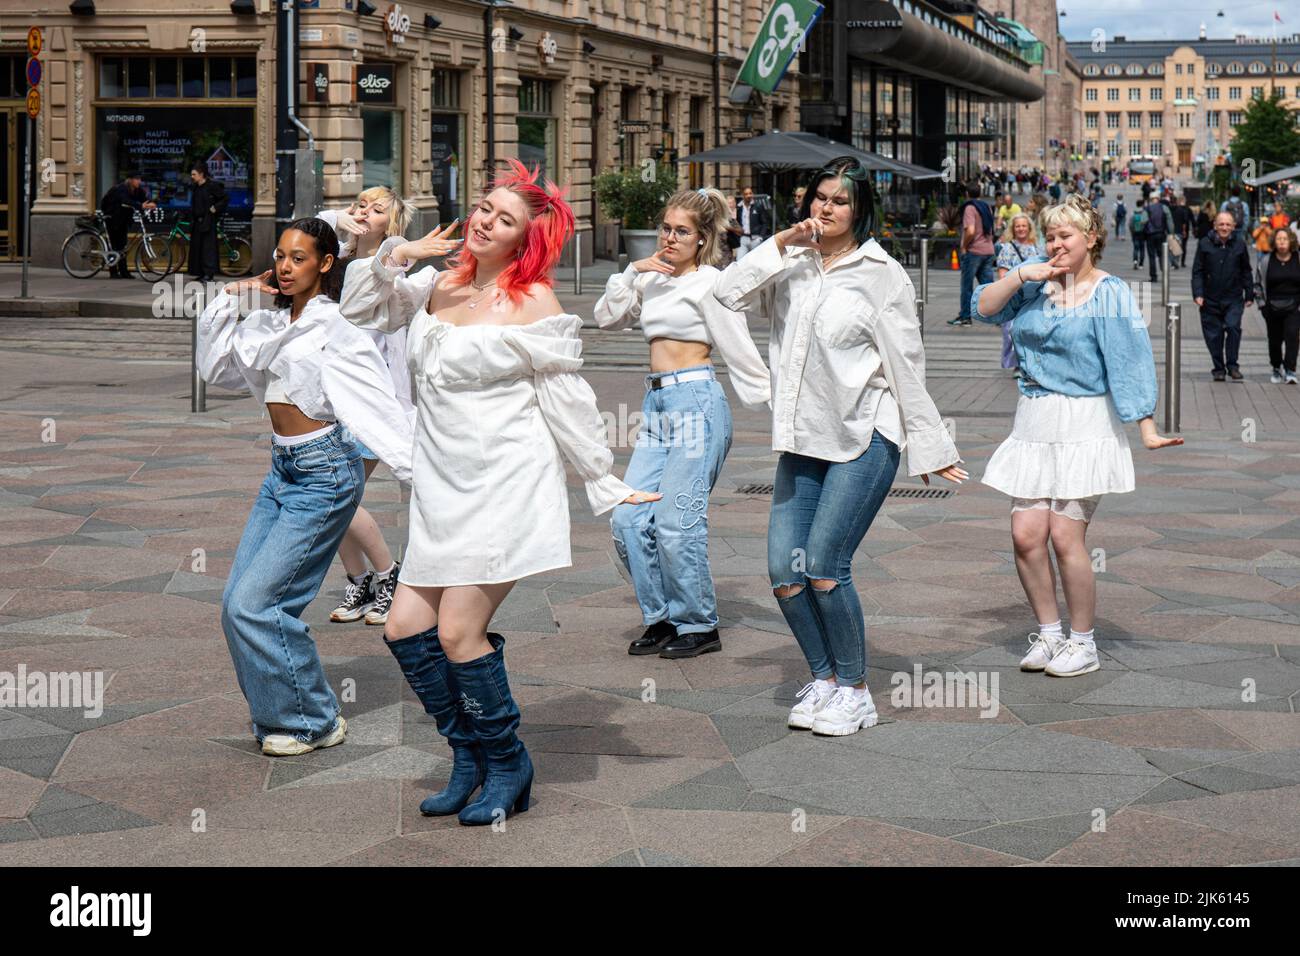 Les jeunes femmes ou adolescentes dansent et font une vidéo à Keskuskatu. District de Kluuvi à Helsinki, Finlande. Banque D'Images